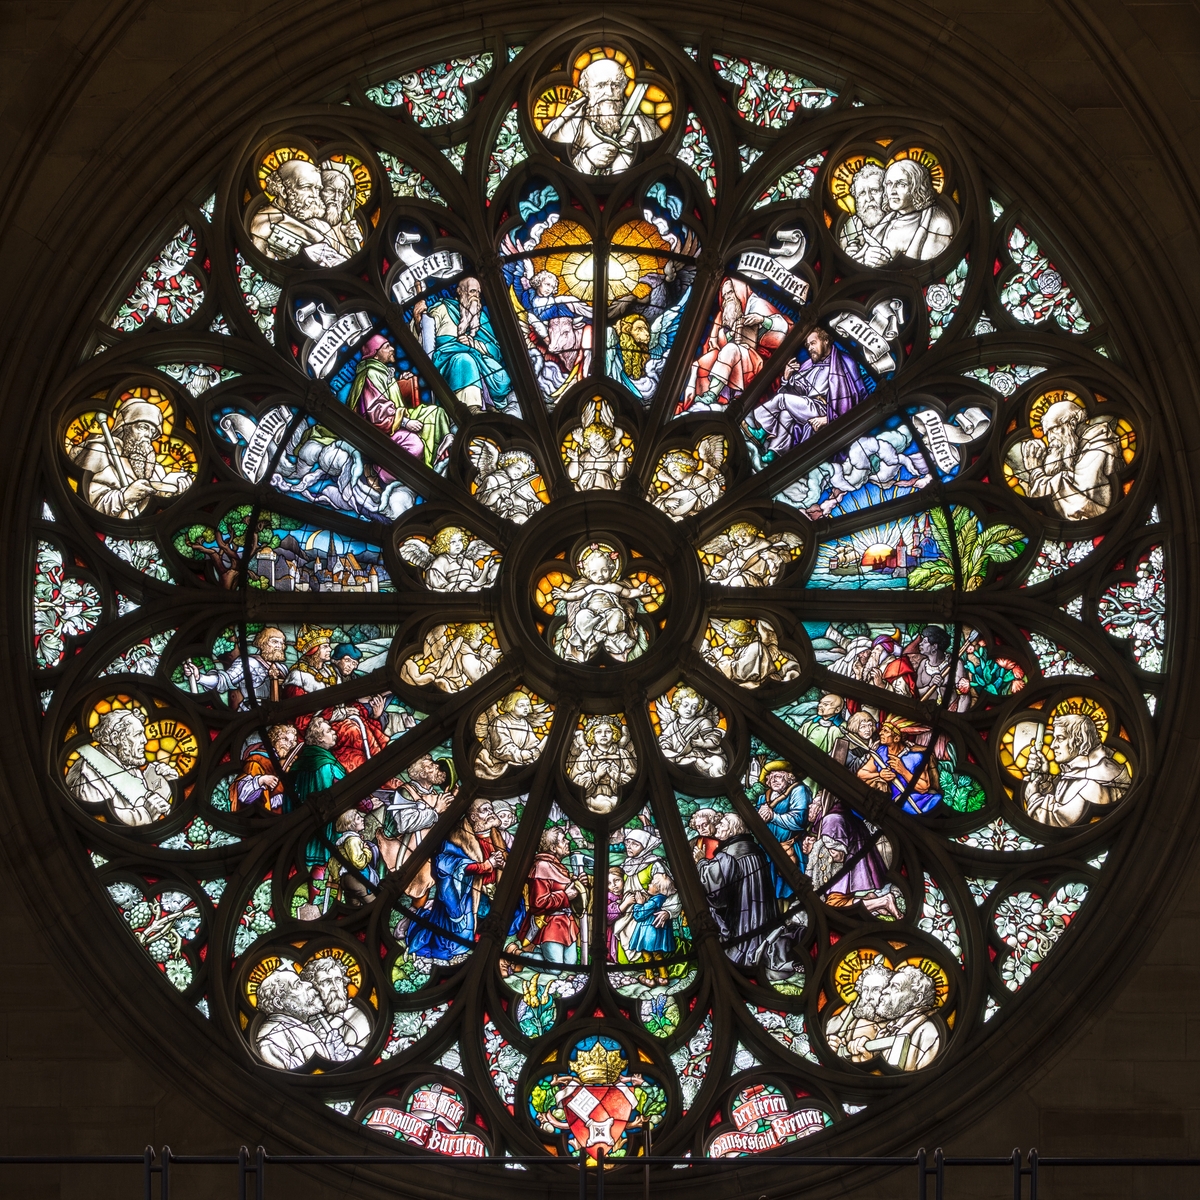 La rosace du transept à droite © Jakob Bradl - licence [CC BY-SA 4.0] from Wikimedia Commons